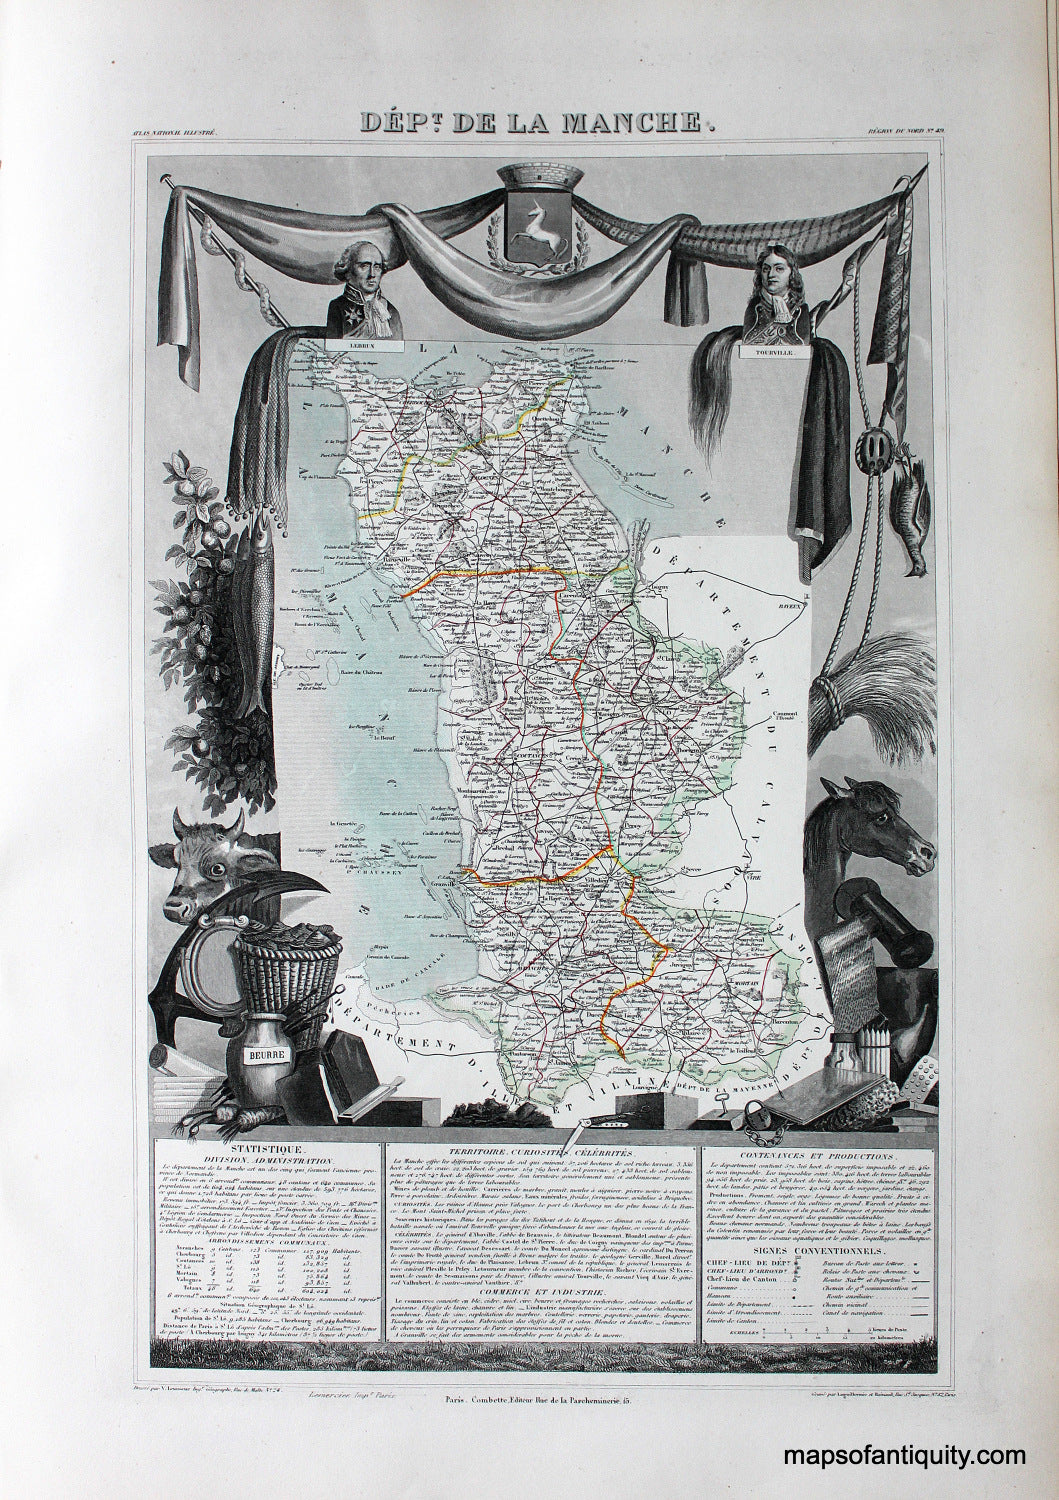 Antique-Hand-Colored-Map-Dept.-de-la-Manche.-Europe-France-1851-Levasseur-Maps-Of-Antiquity